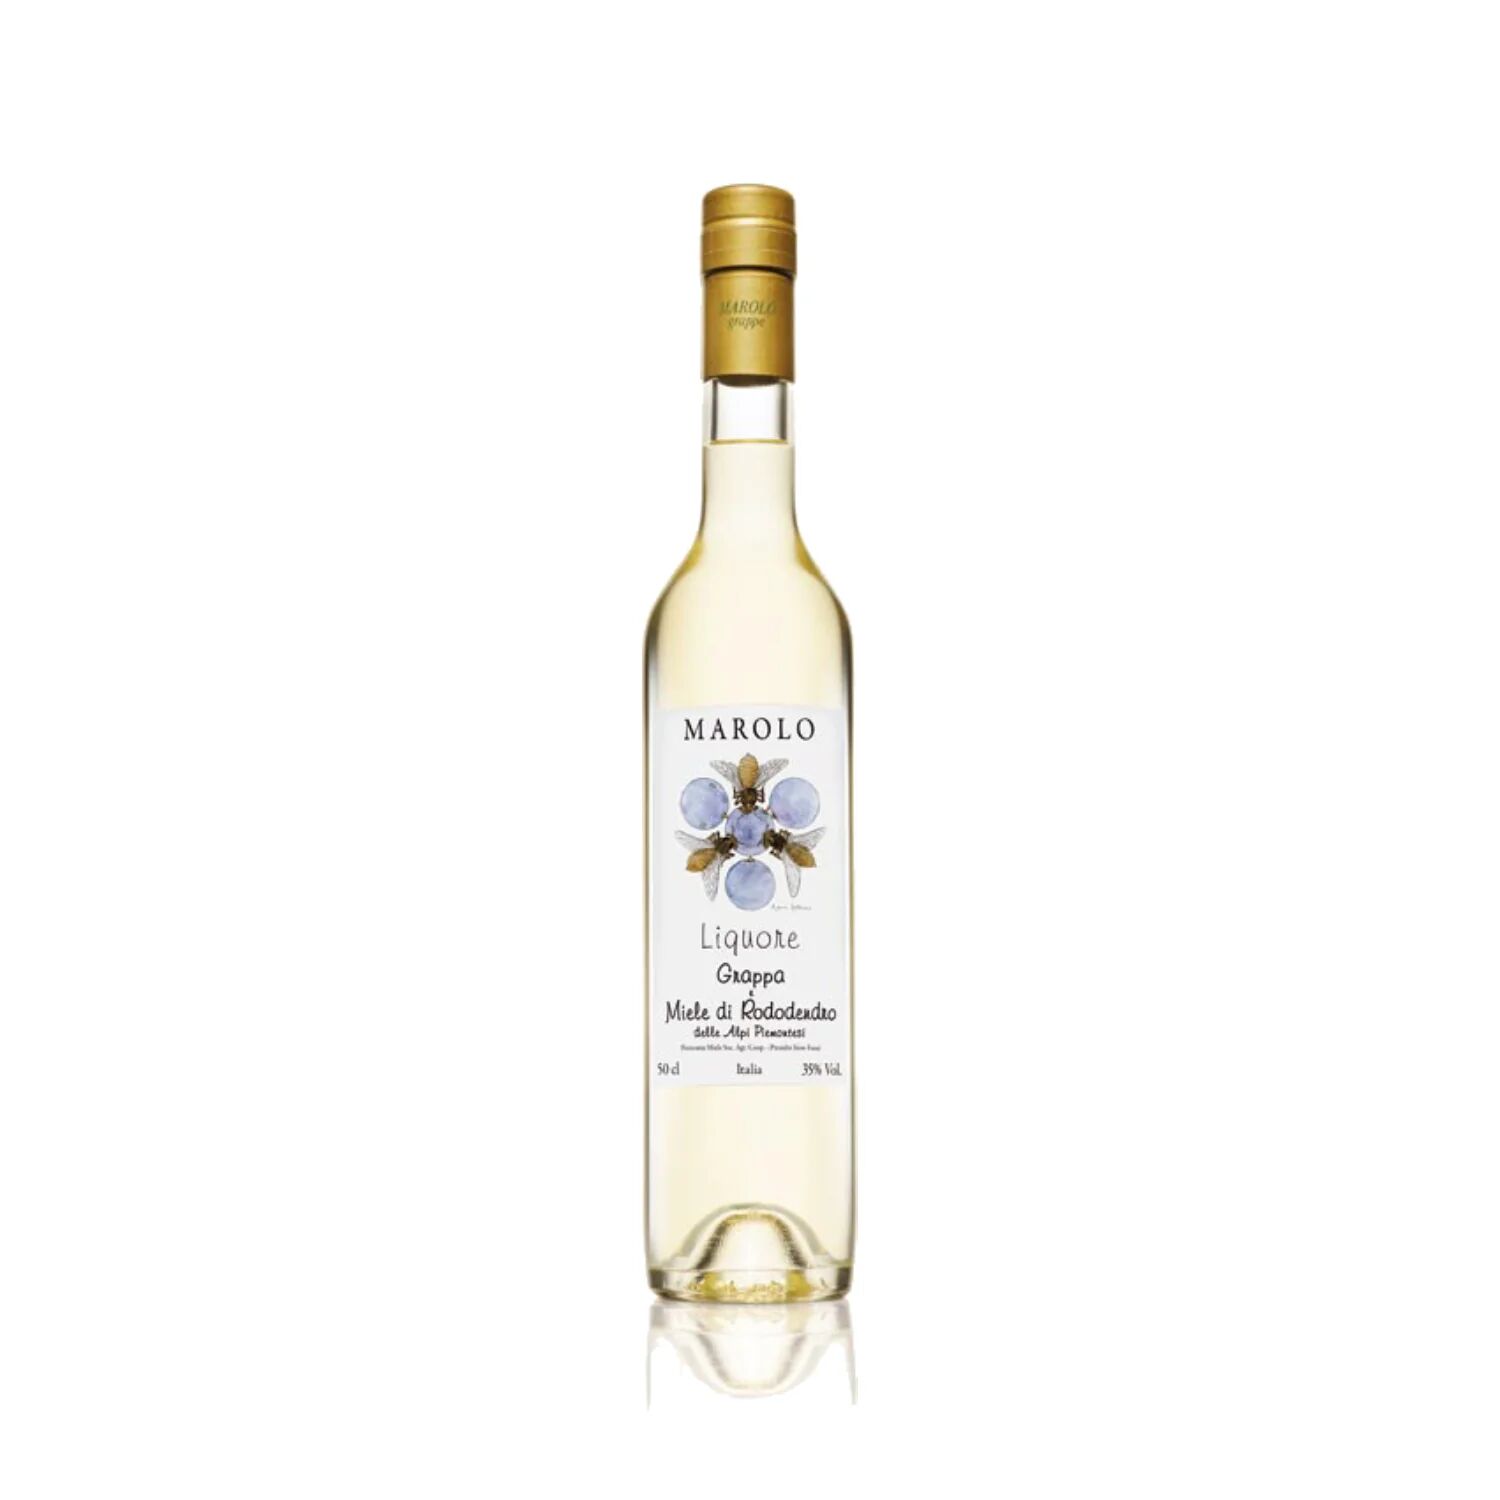 distilleria marolo grappa e miele di rododendro - marolo (presidio  slow food) - astuccio - 0,50 l